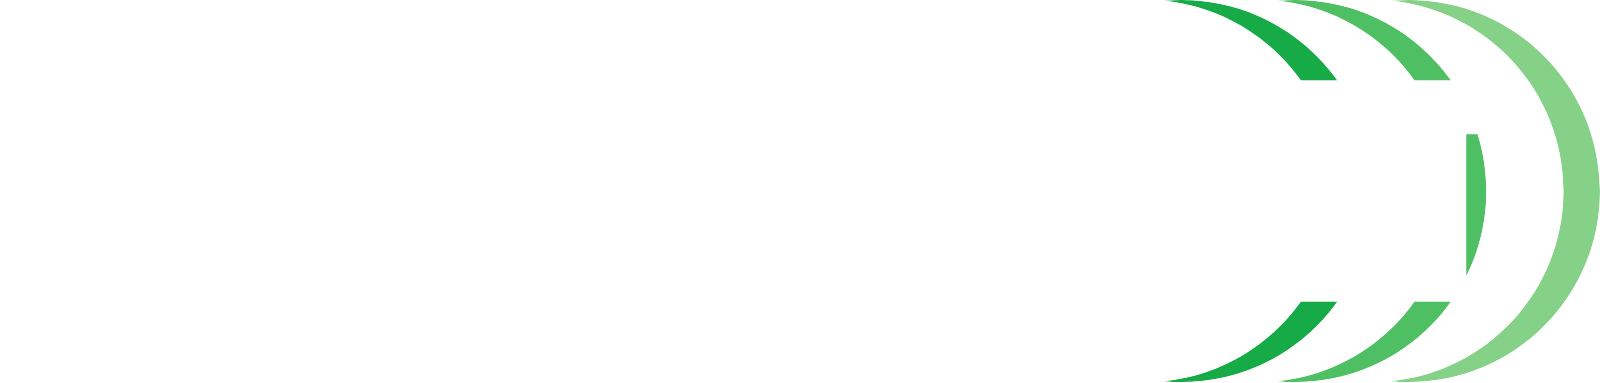 Hensoldt logo grand pour les fonds sombres (PNG transparent)